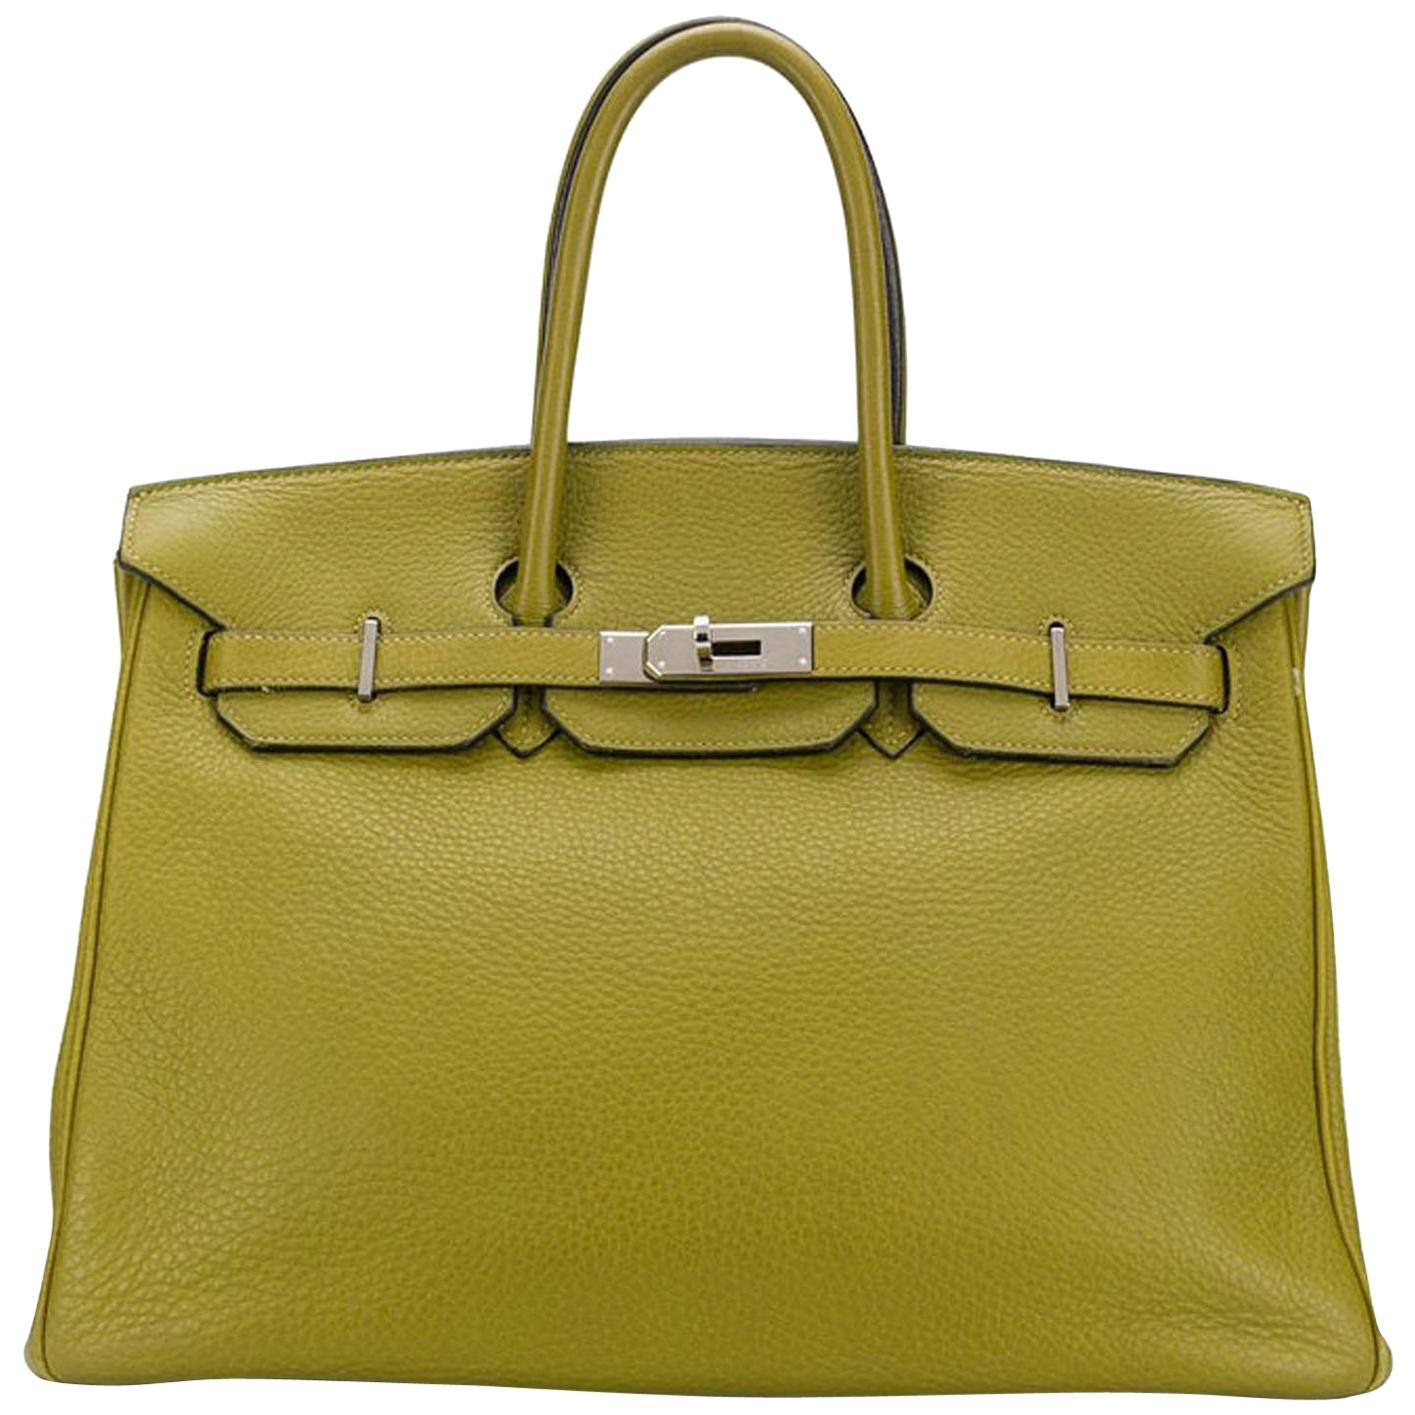 Hermès Birkin 35cm Vert Anis Togo Leather